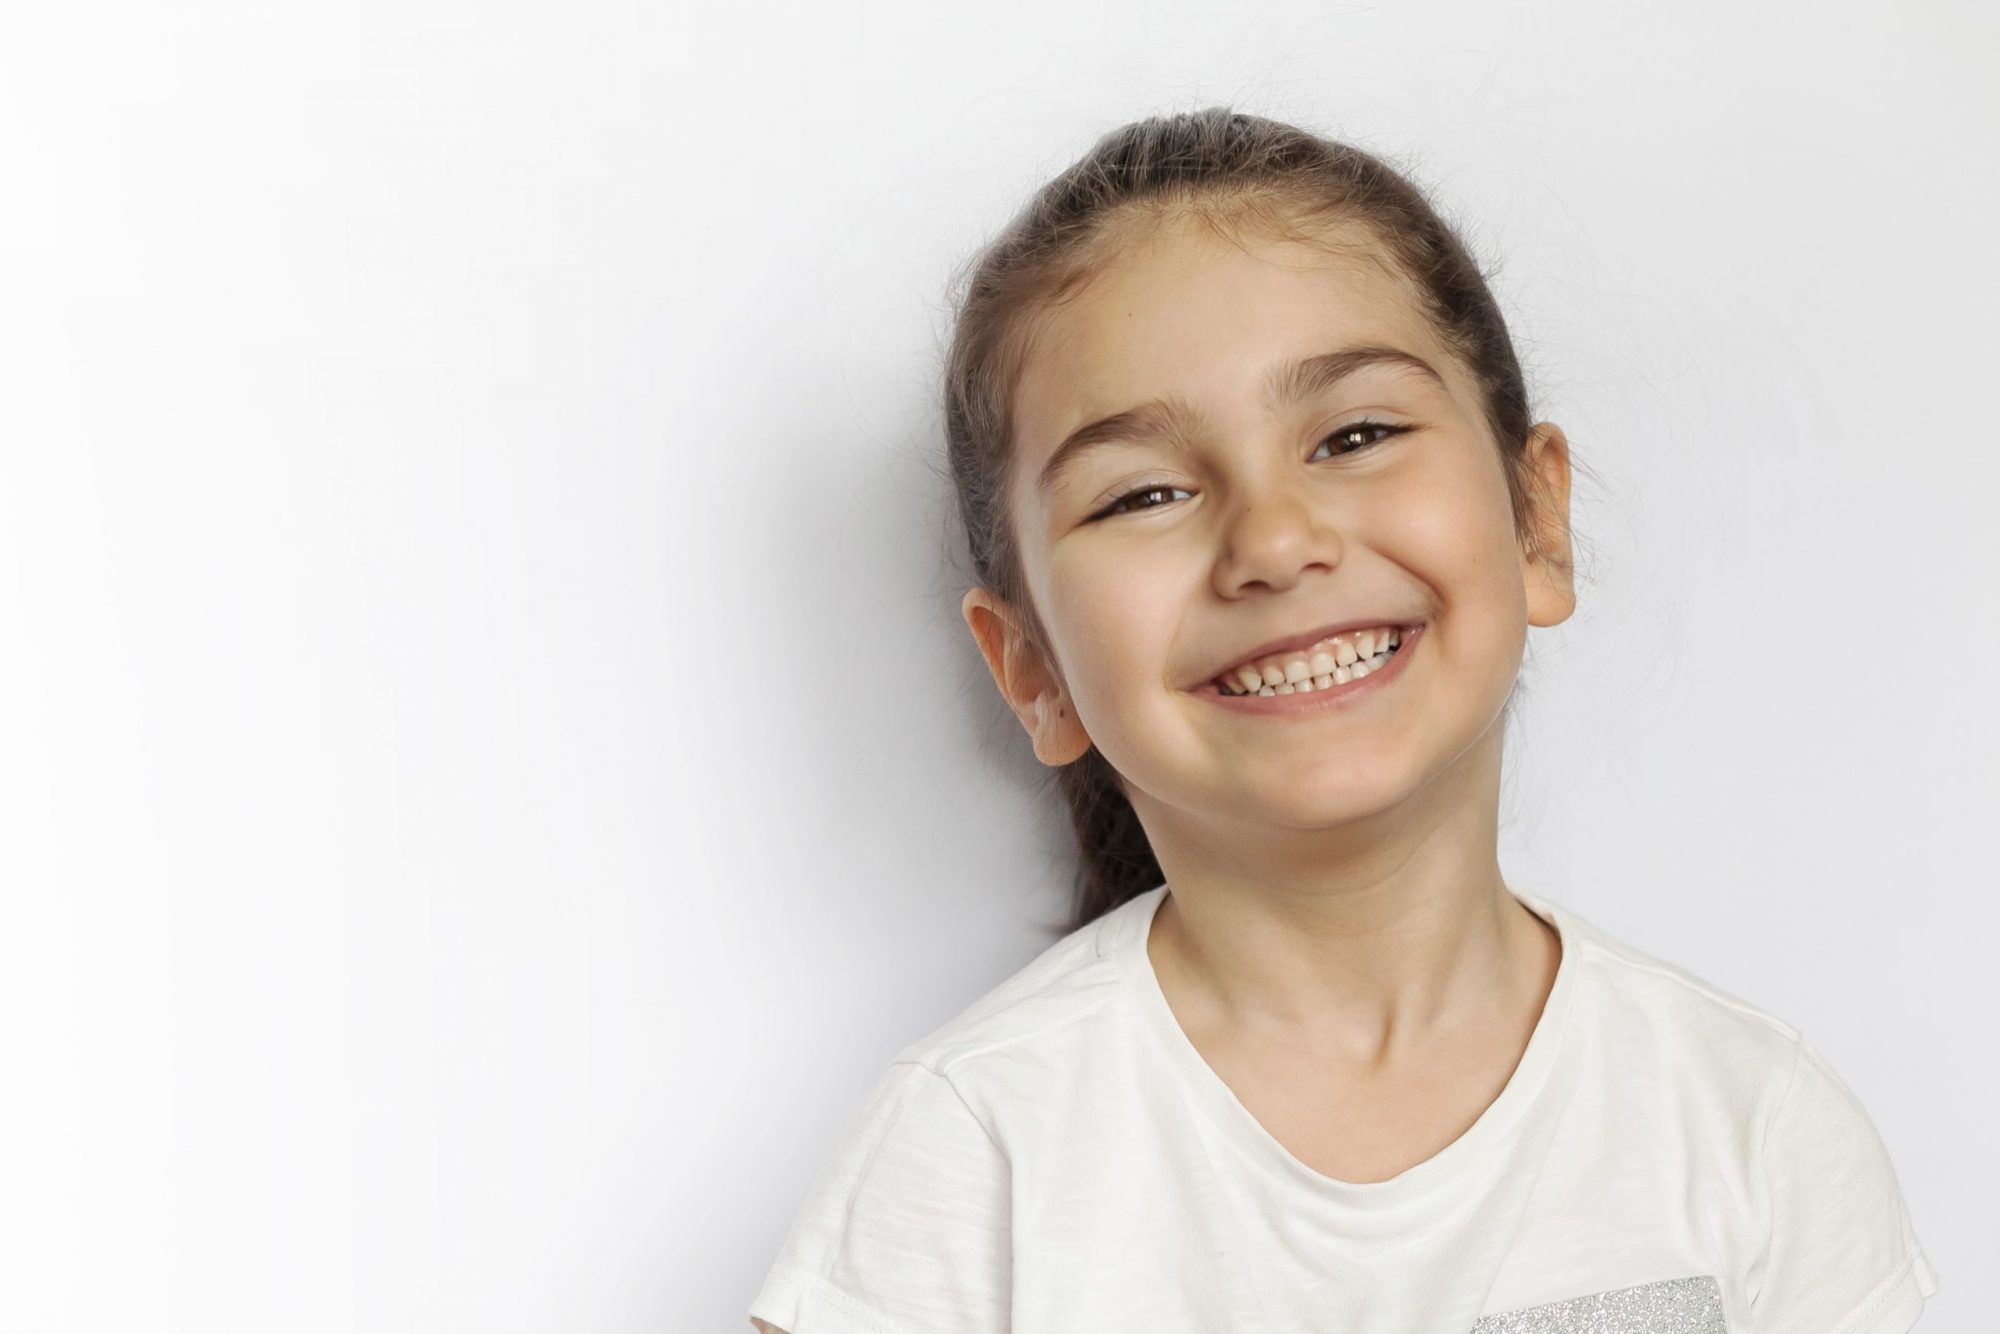 Childrens dentistry milton keynes girl smiling